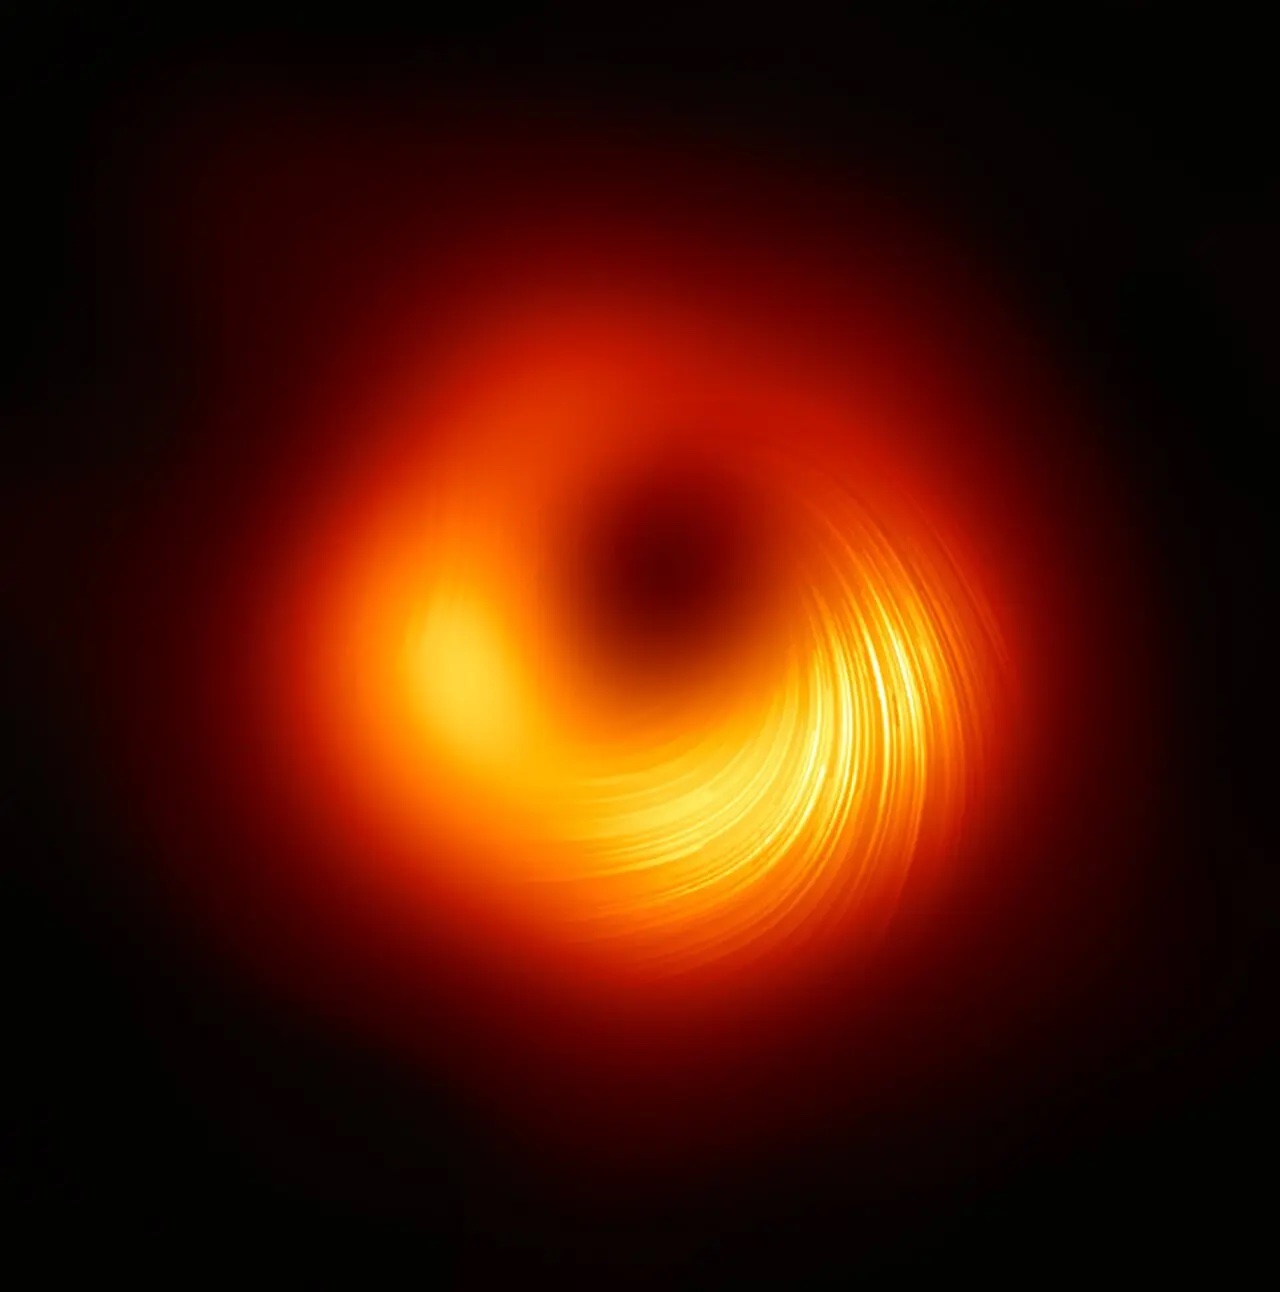 偏振光下M87超大质量黑洞图像